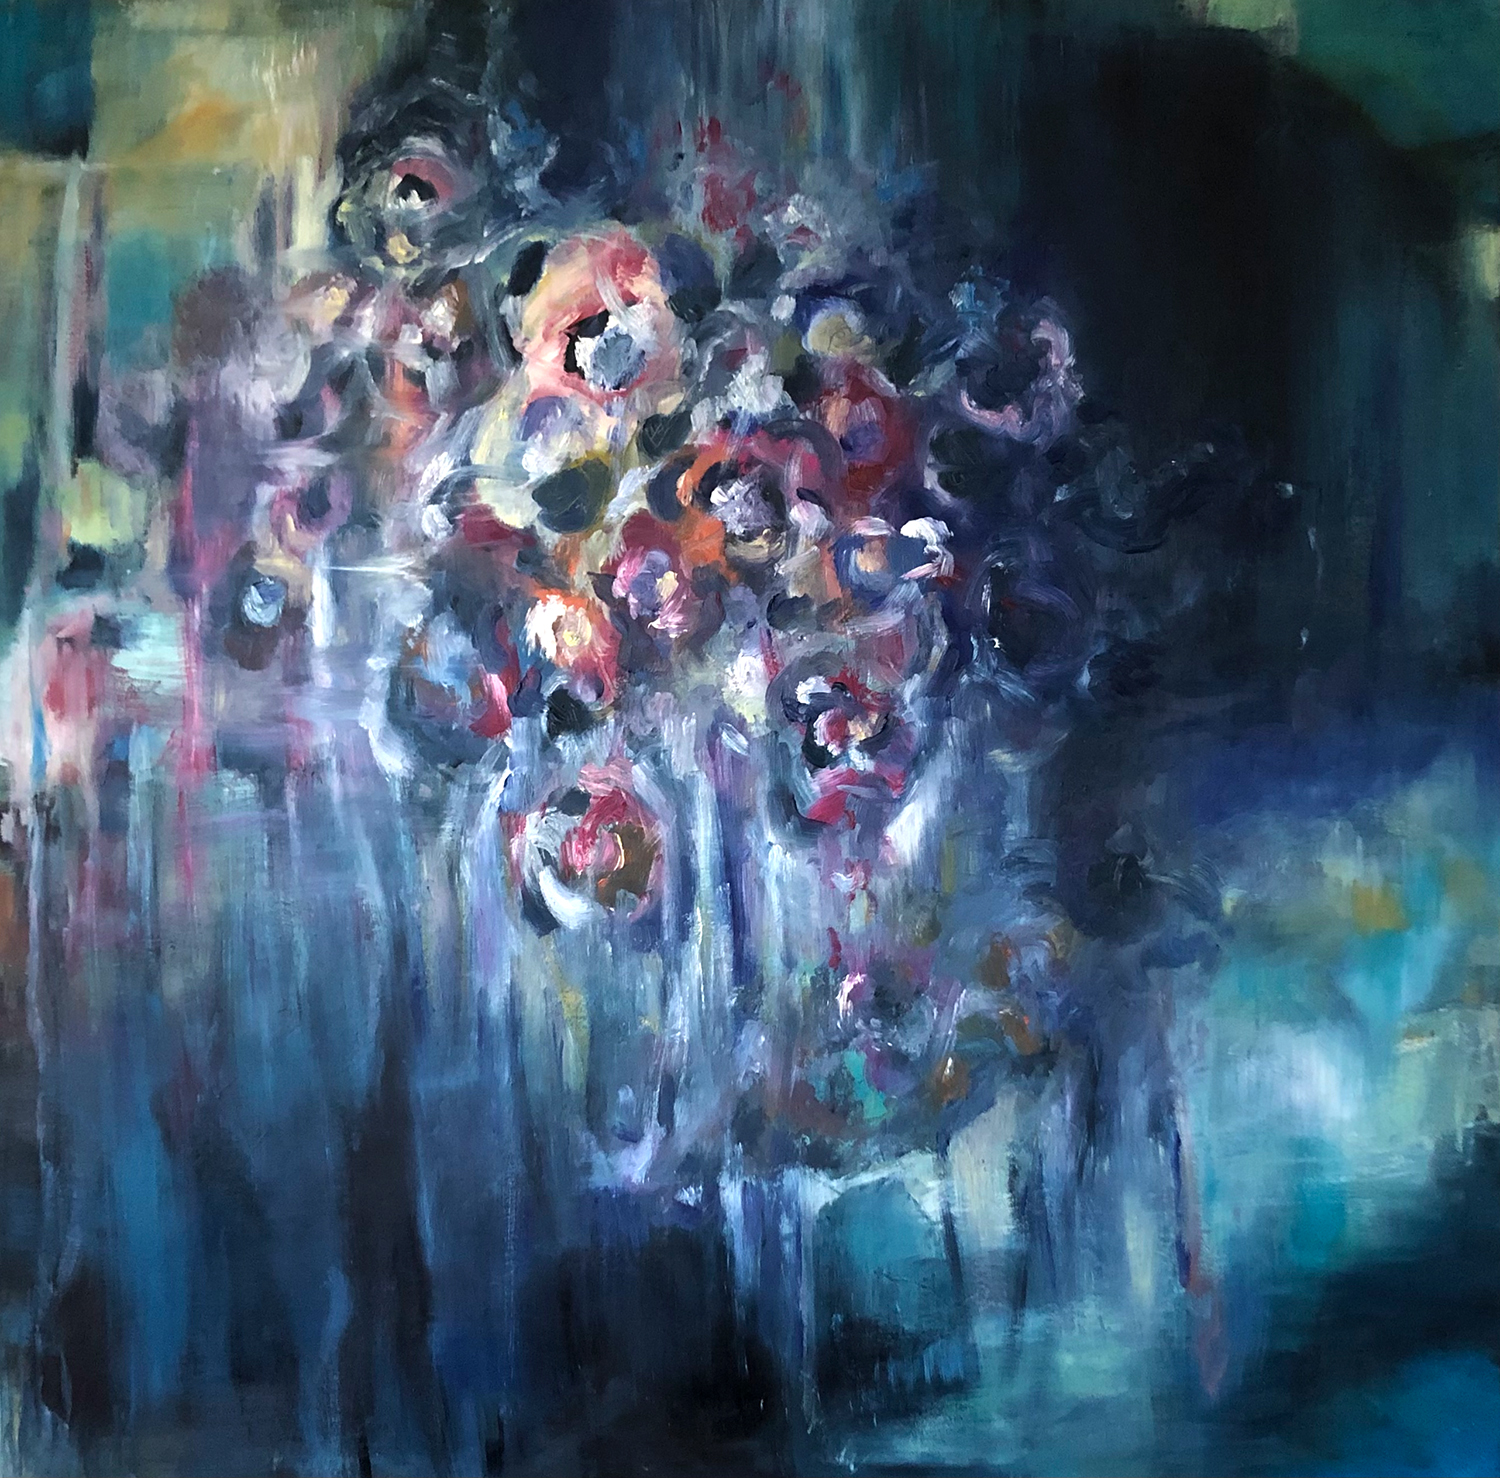 Ölgemälde von Nicole Sacher mit abstrakten und farbigen Blumen und der Hintergrund fliesst in verschiedene blaue Farbtöne